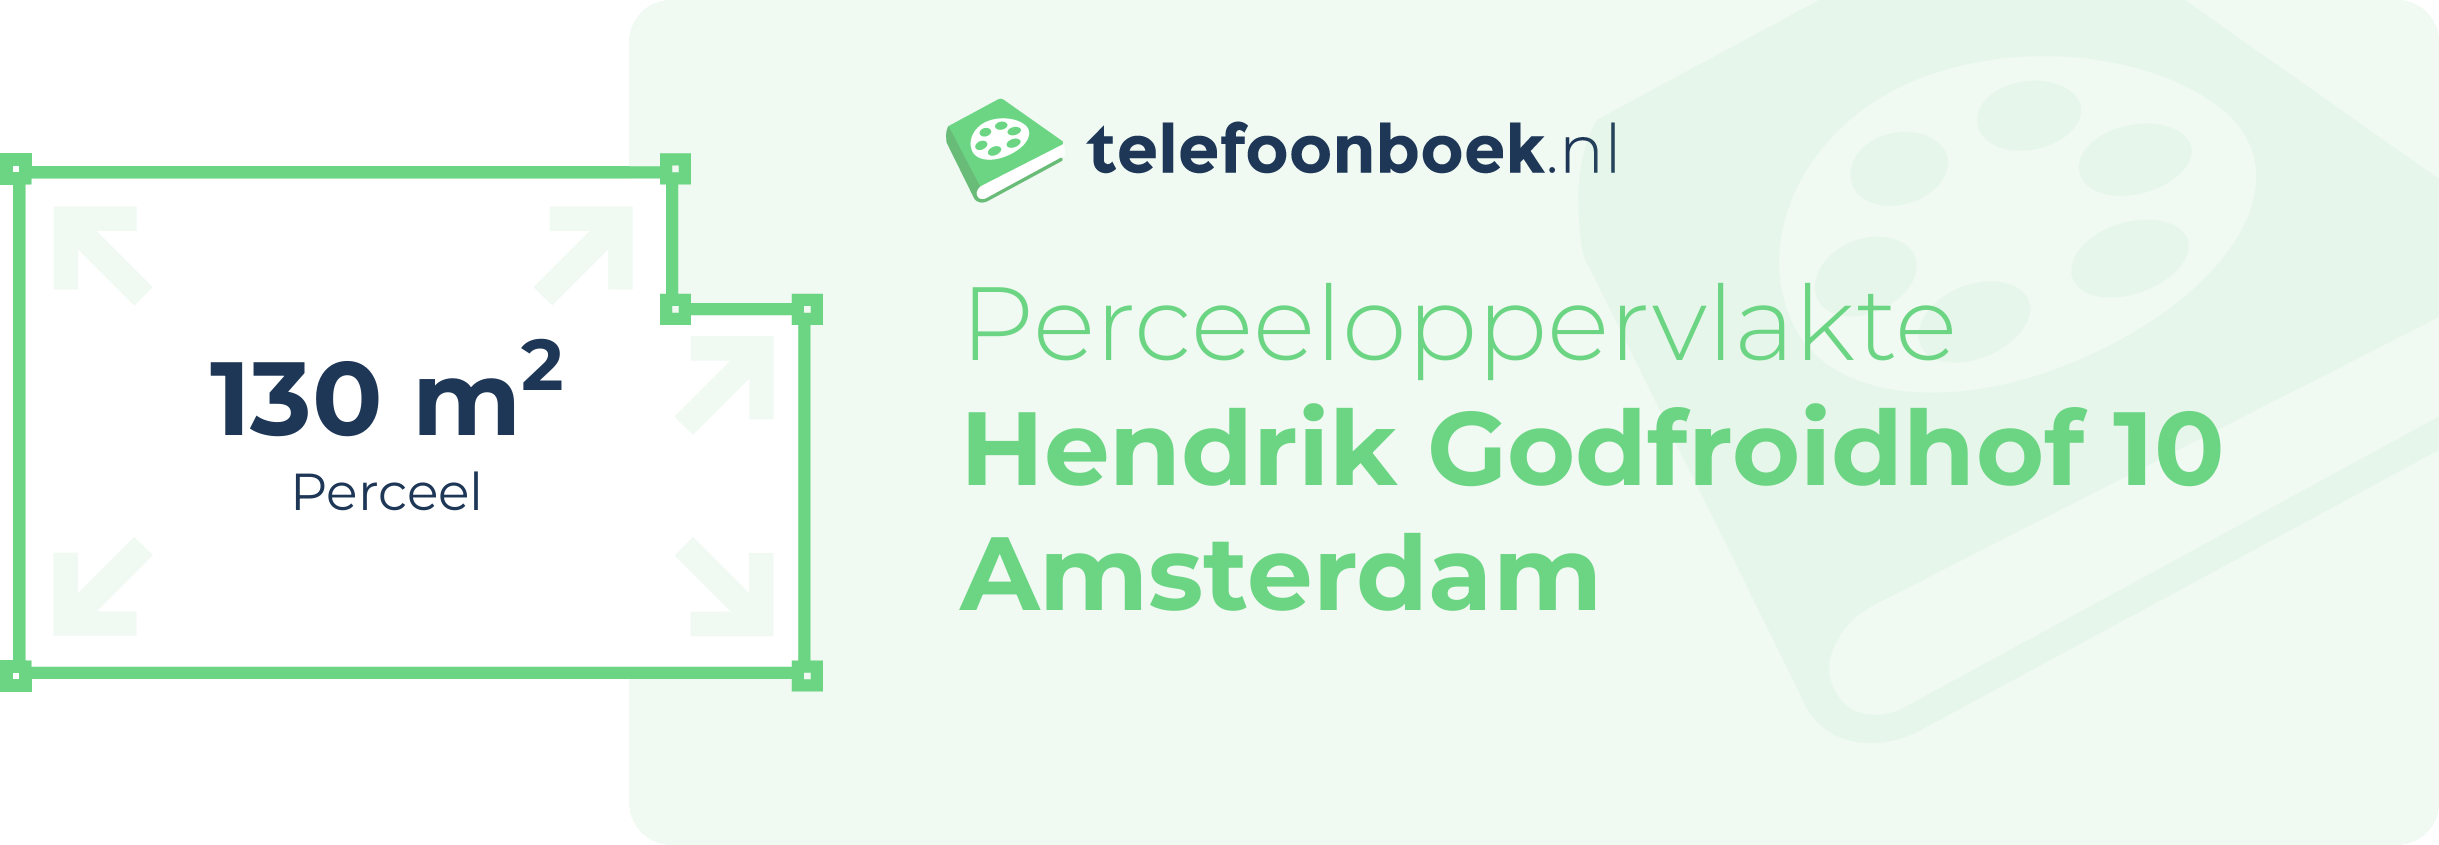 Perceeloppervlakte Hendrik Godfroidhof 10 Amsterdam